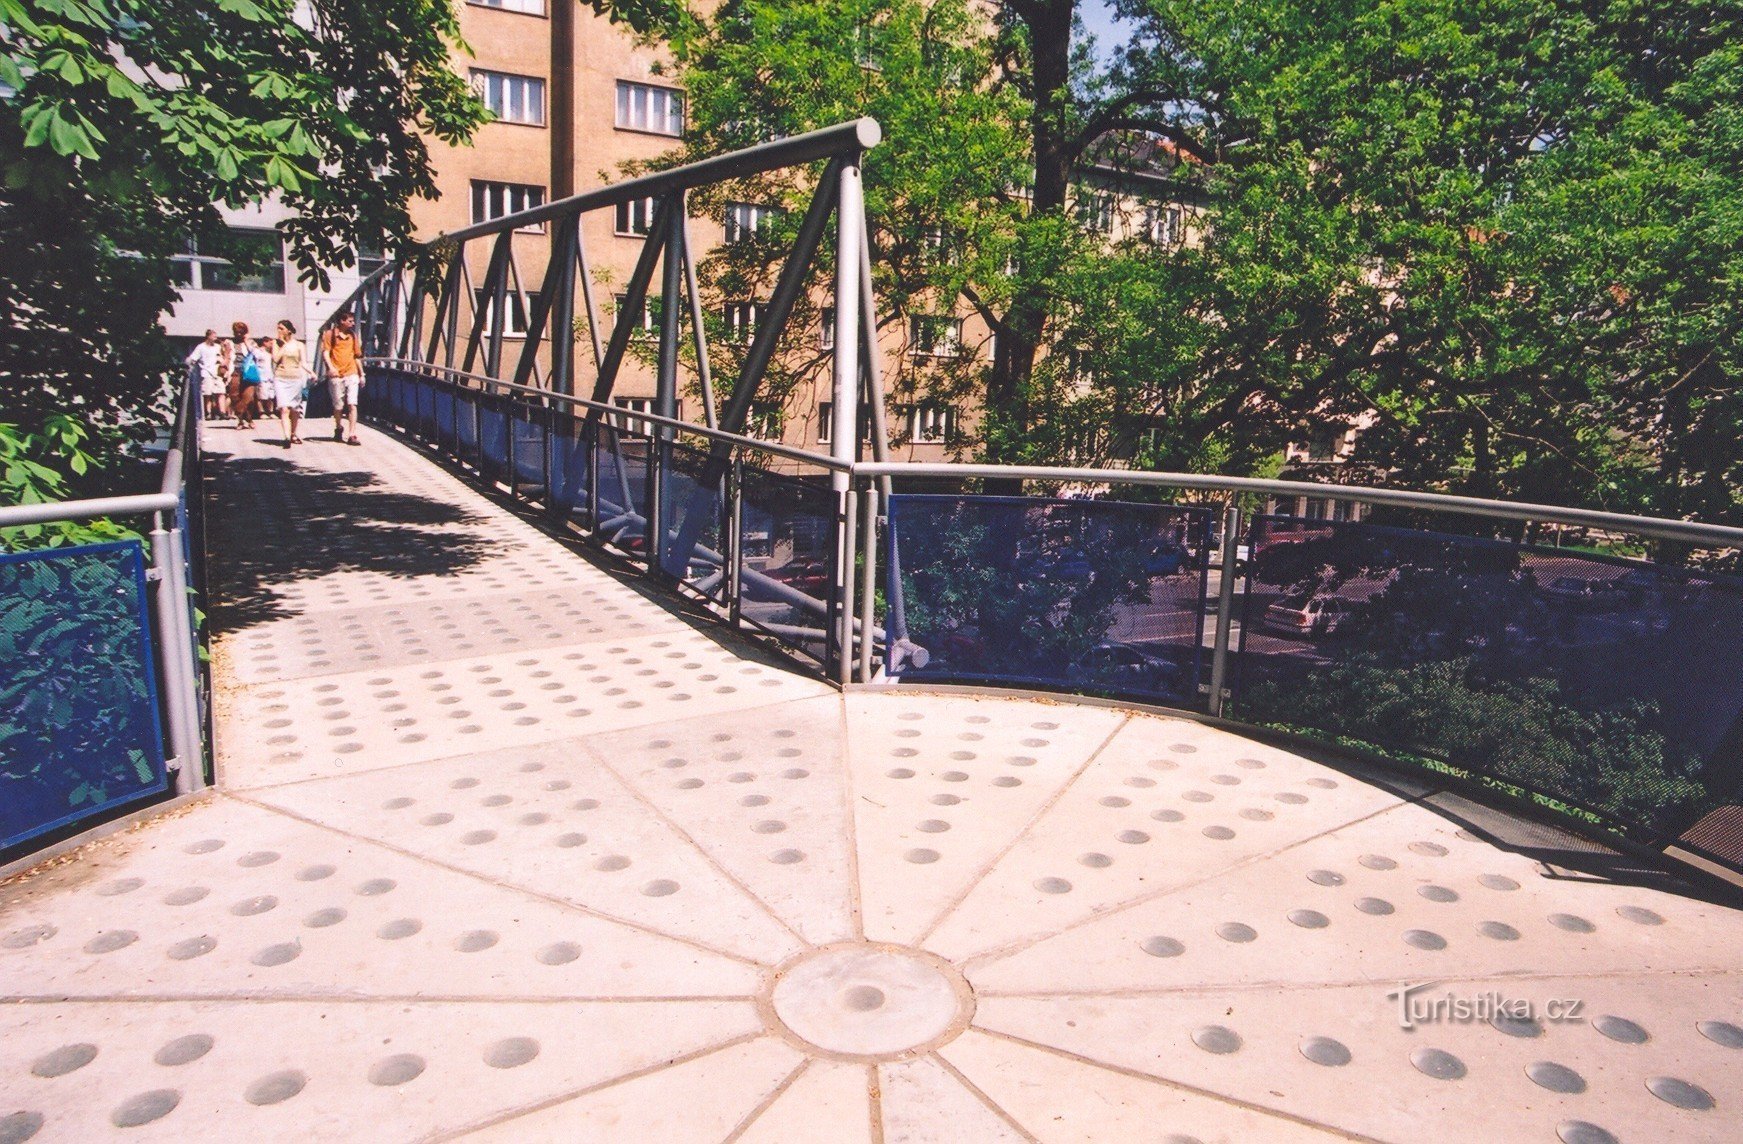 ブルノ・コリシュチェ - 歩道橋